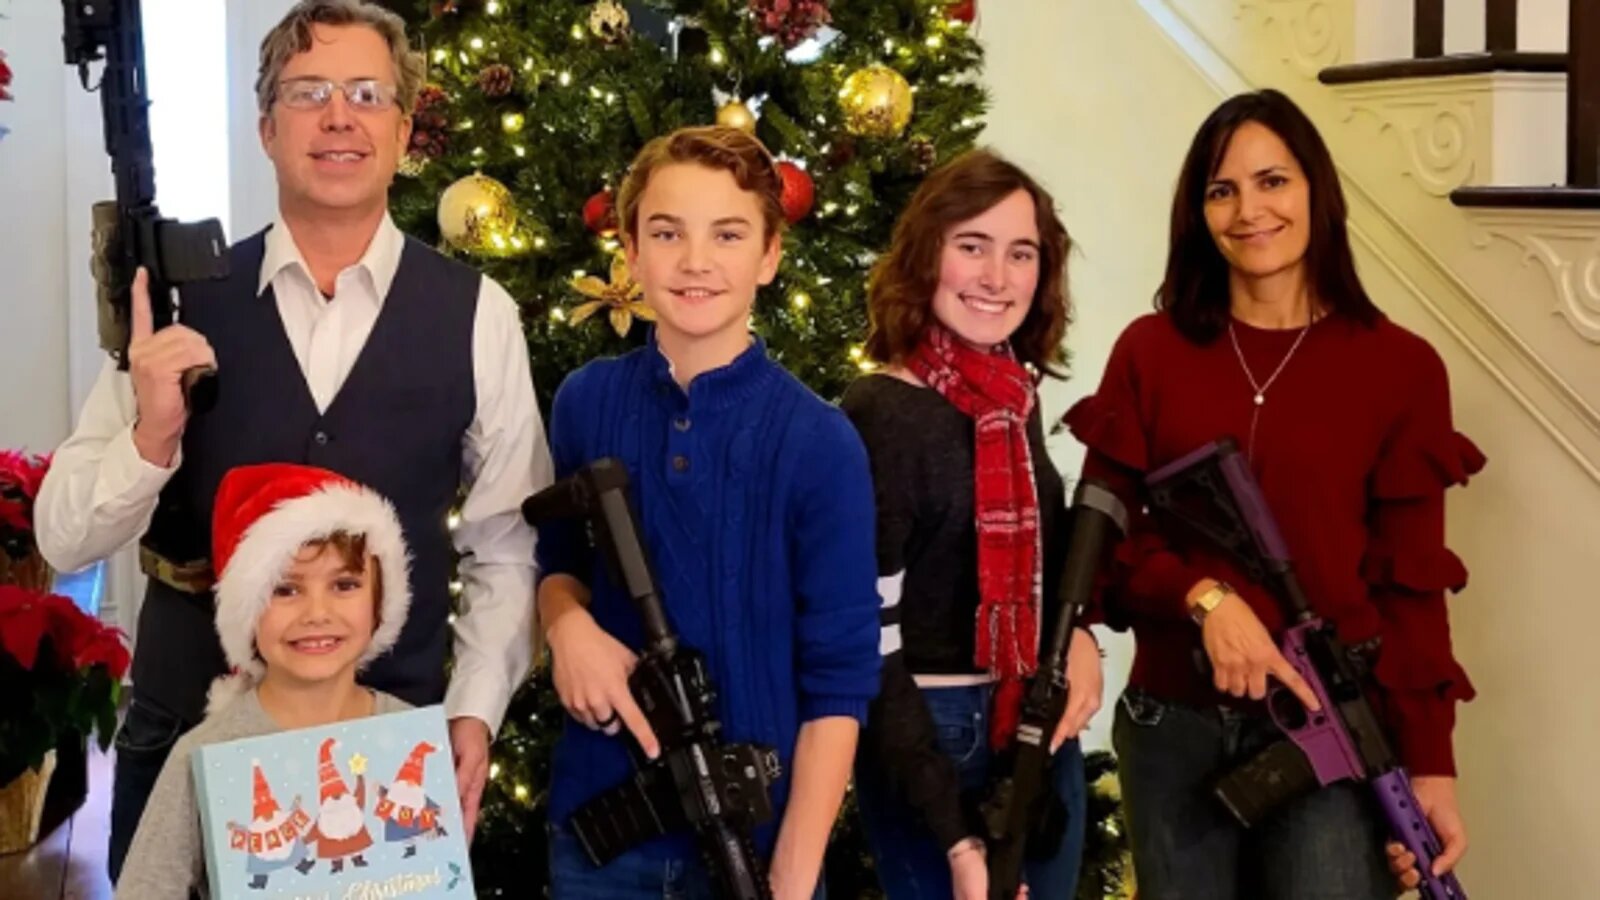 Matanza en Nashville: La reacción del congresista que posó con rifles en FOTO familiar navideña